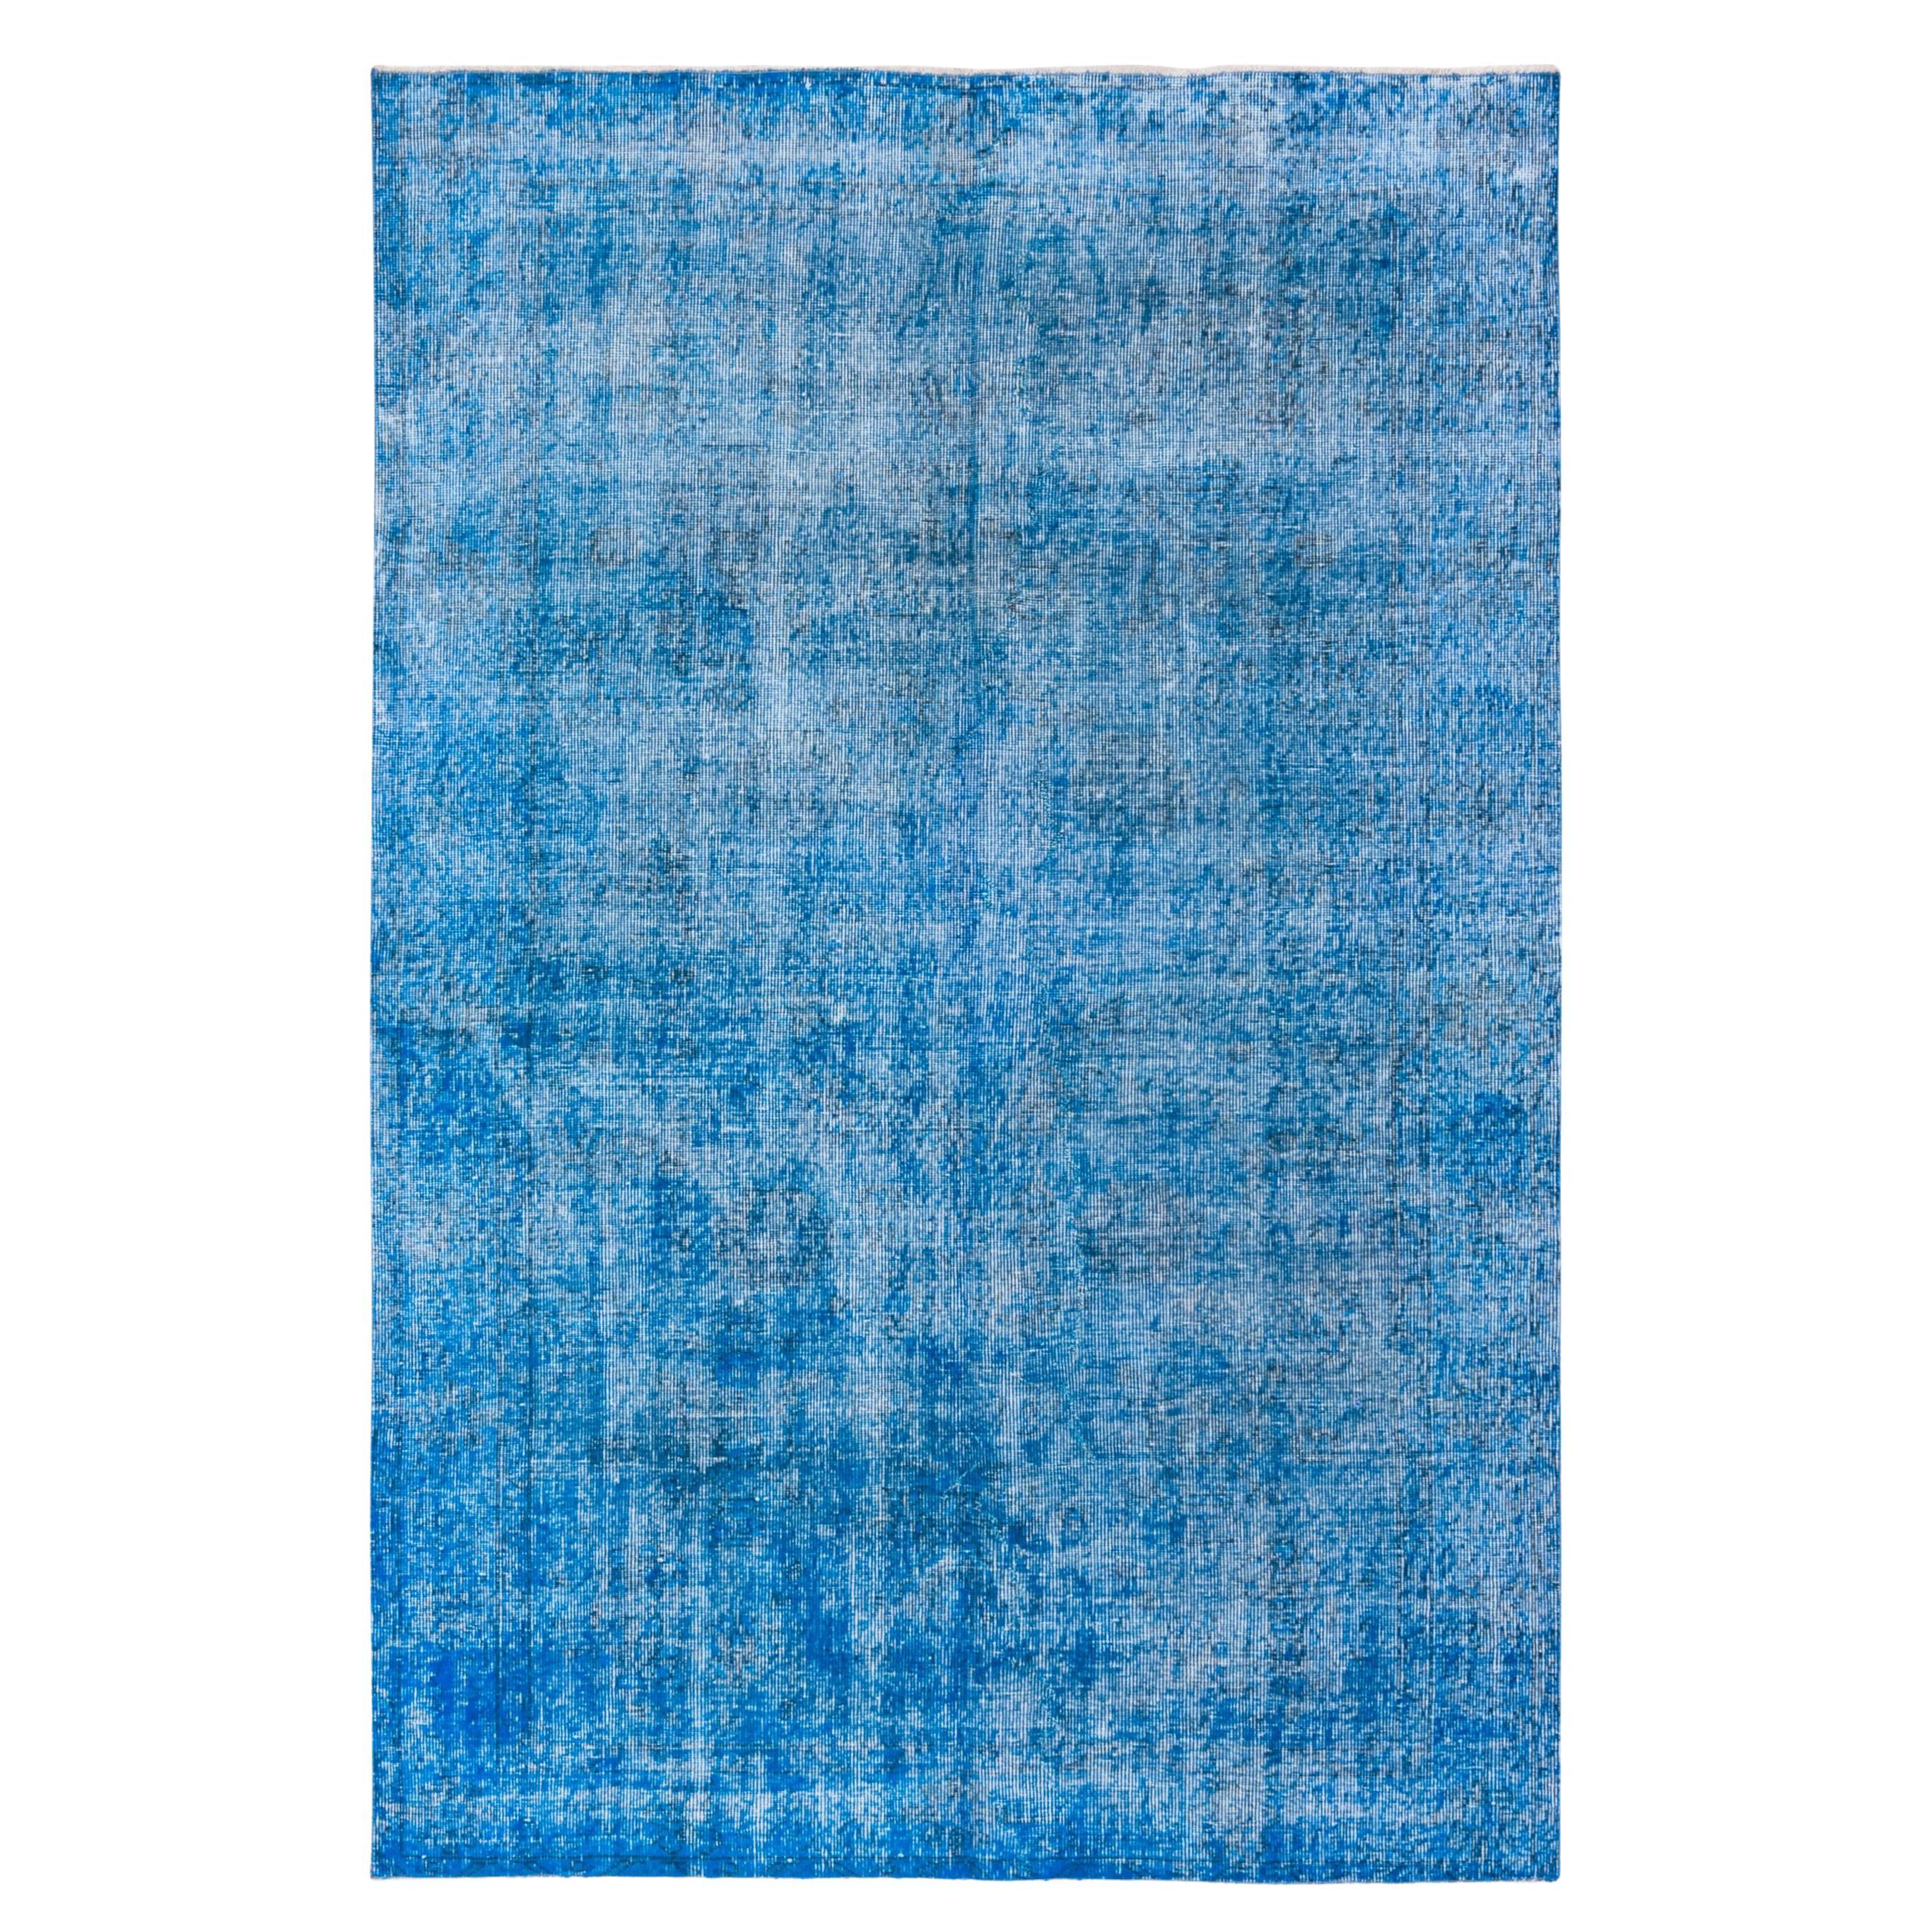 Überzogener blauer Teppich im Shabby-Chic-Stil, leuchtend farbenfroh im Angebot